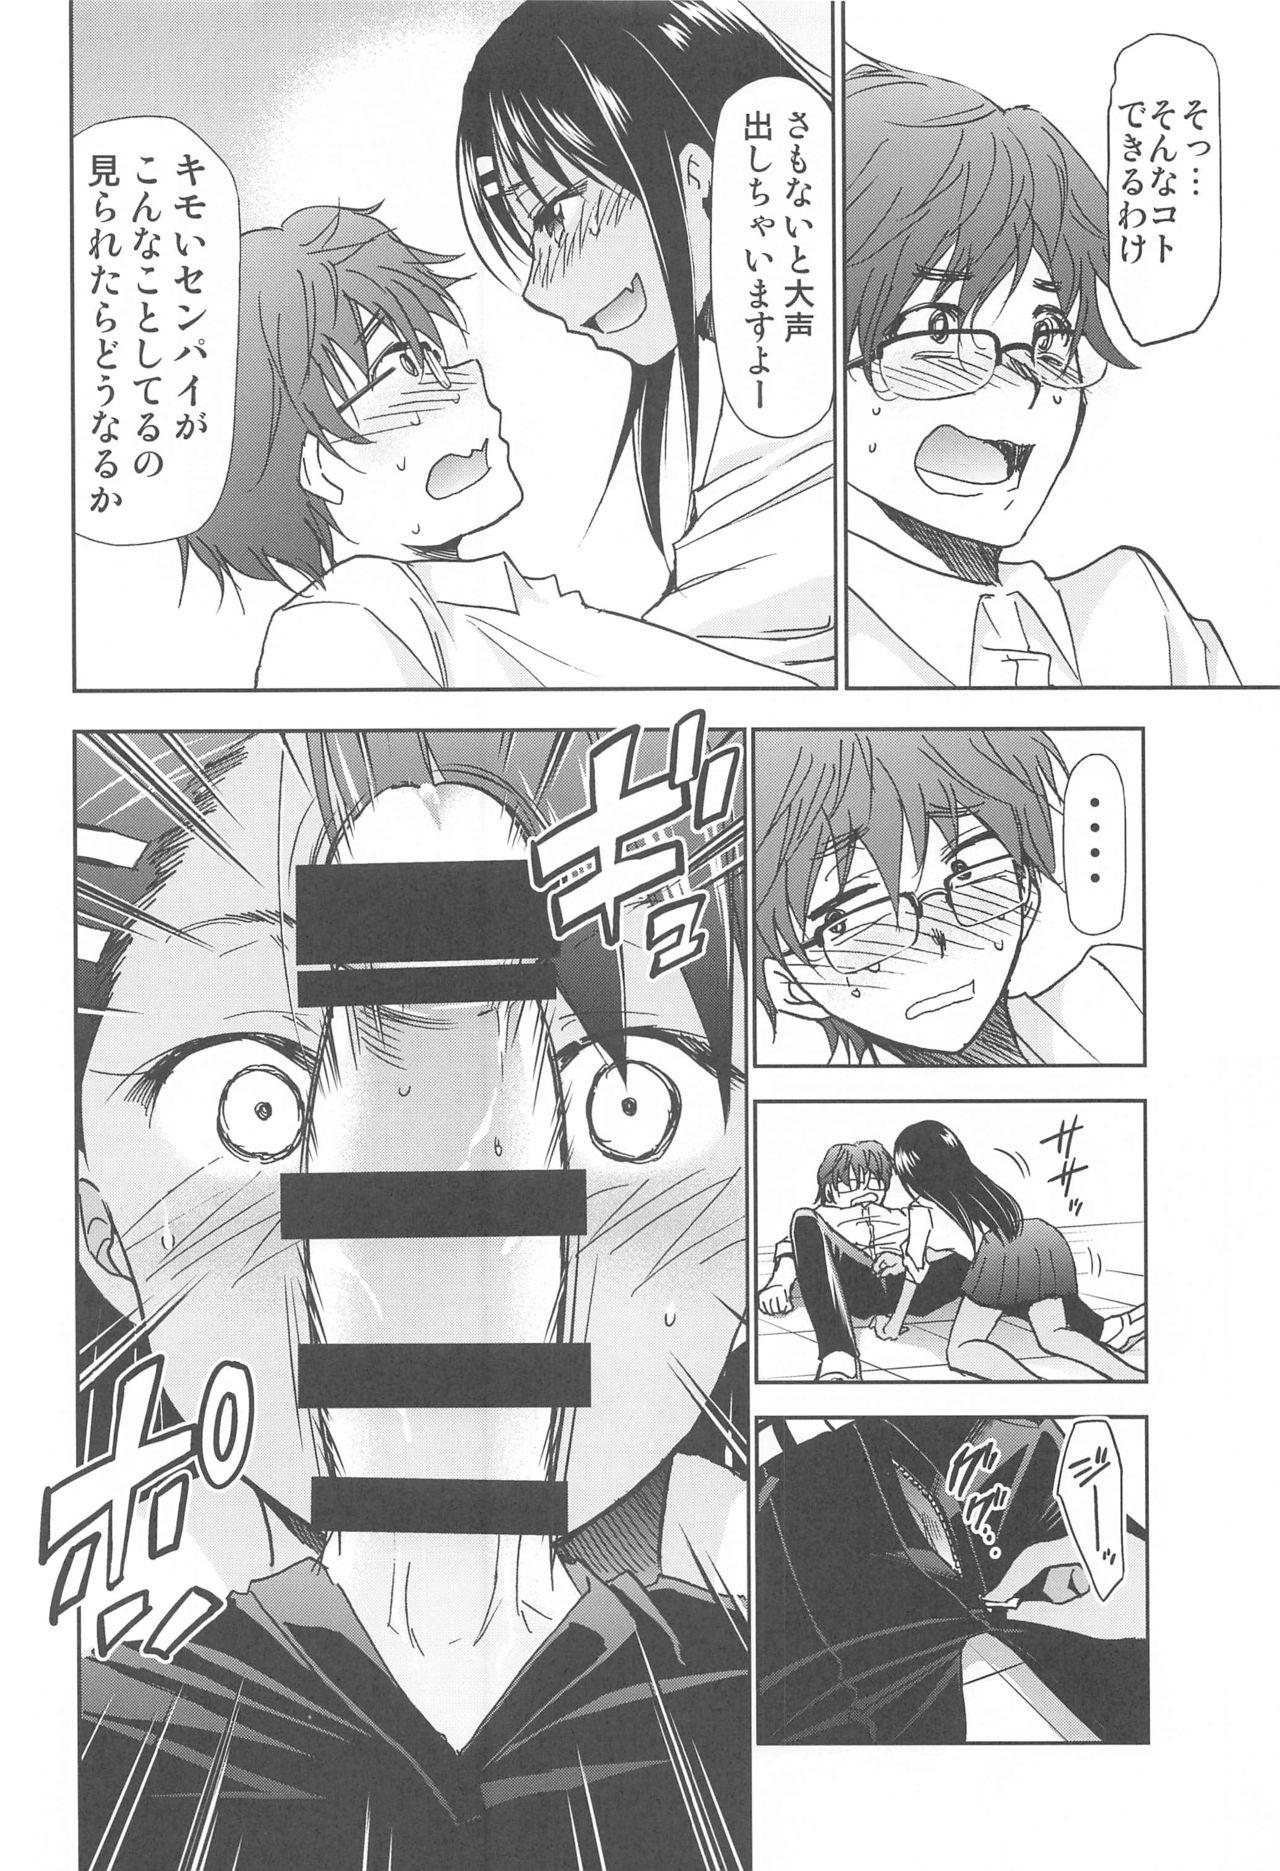 Gostosa ijirimakuttane、nagatorosan - Ijiranaide nagatoro-san Action - Page 9